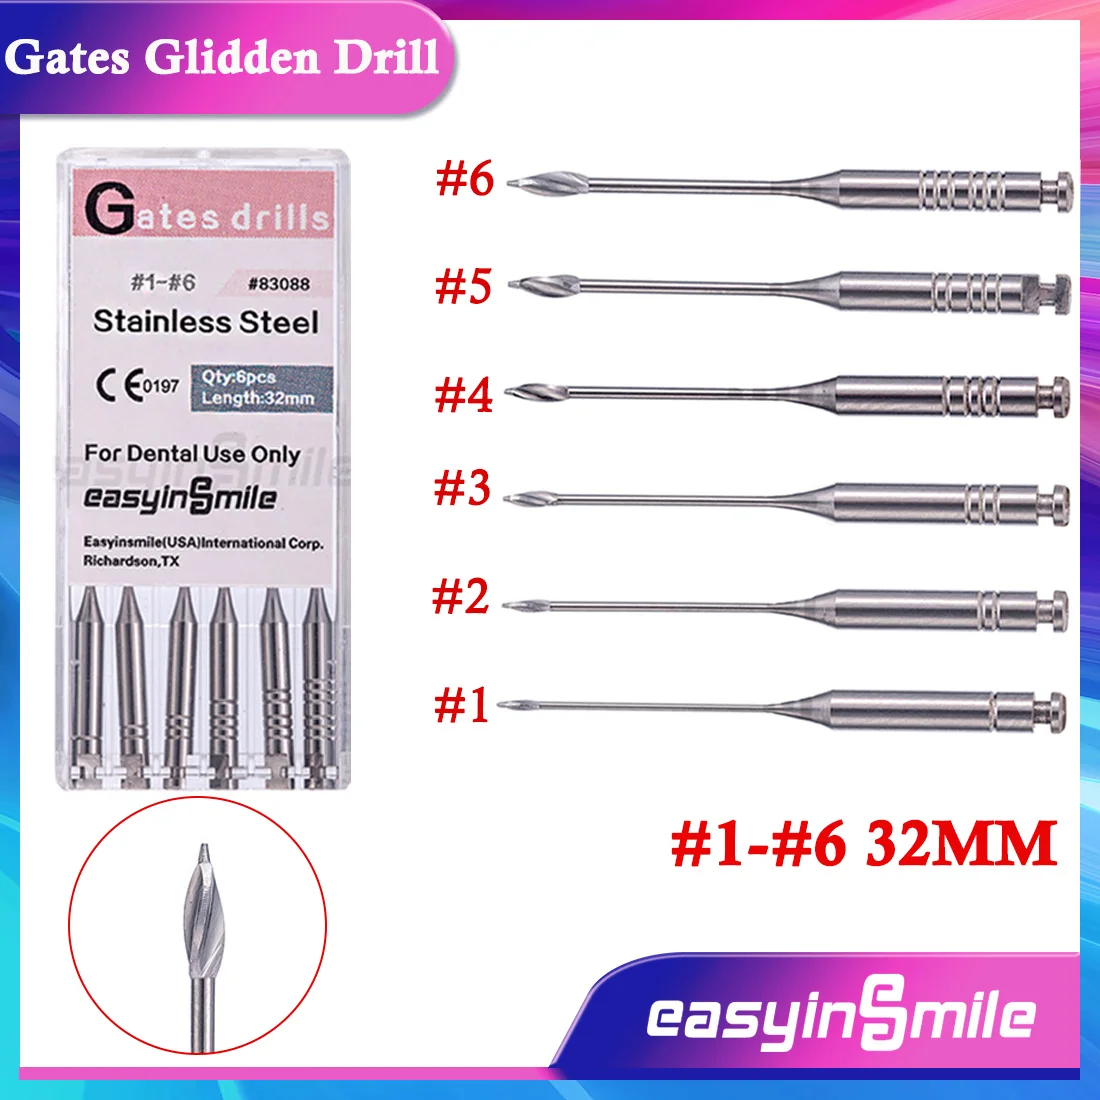 

1Packs Dental Root Canal Endodontic Files Reamers Burs #1-#6 Gates Glidden Drill 32MM Stainless Steel Burs EASYINSMILE